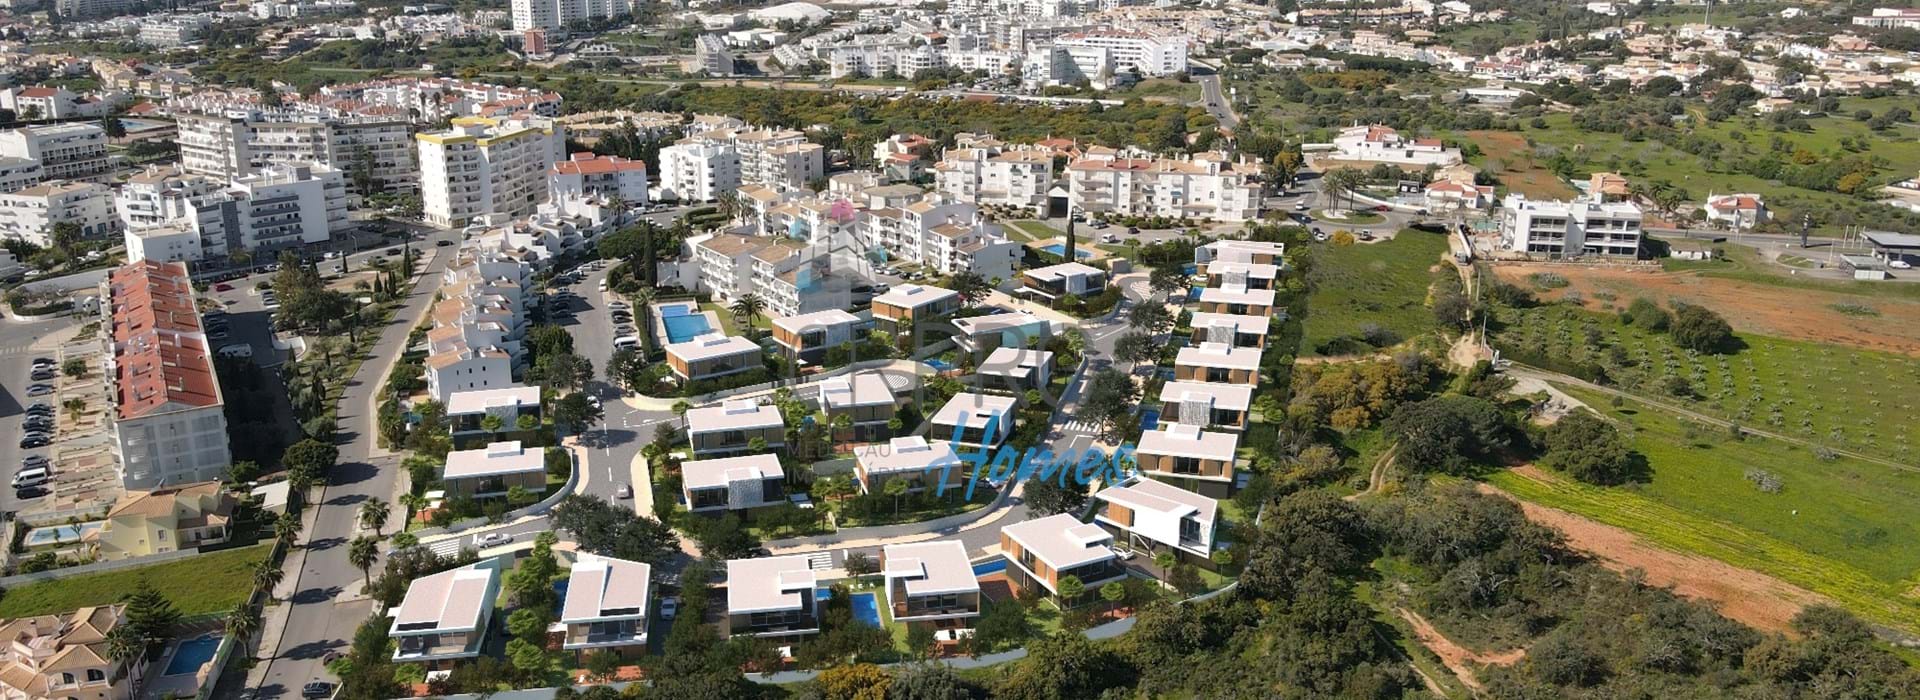 A vendre, terrains à construire dans un nouveau lotissement au centre d'Albufeira. 